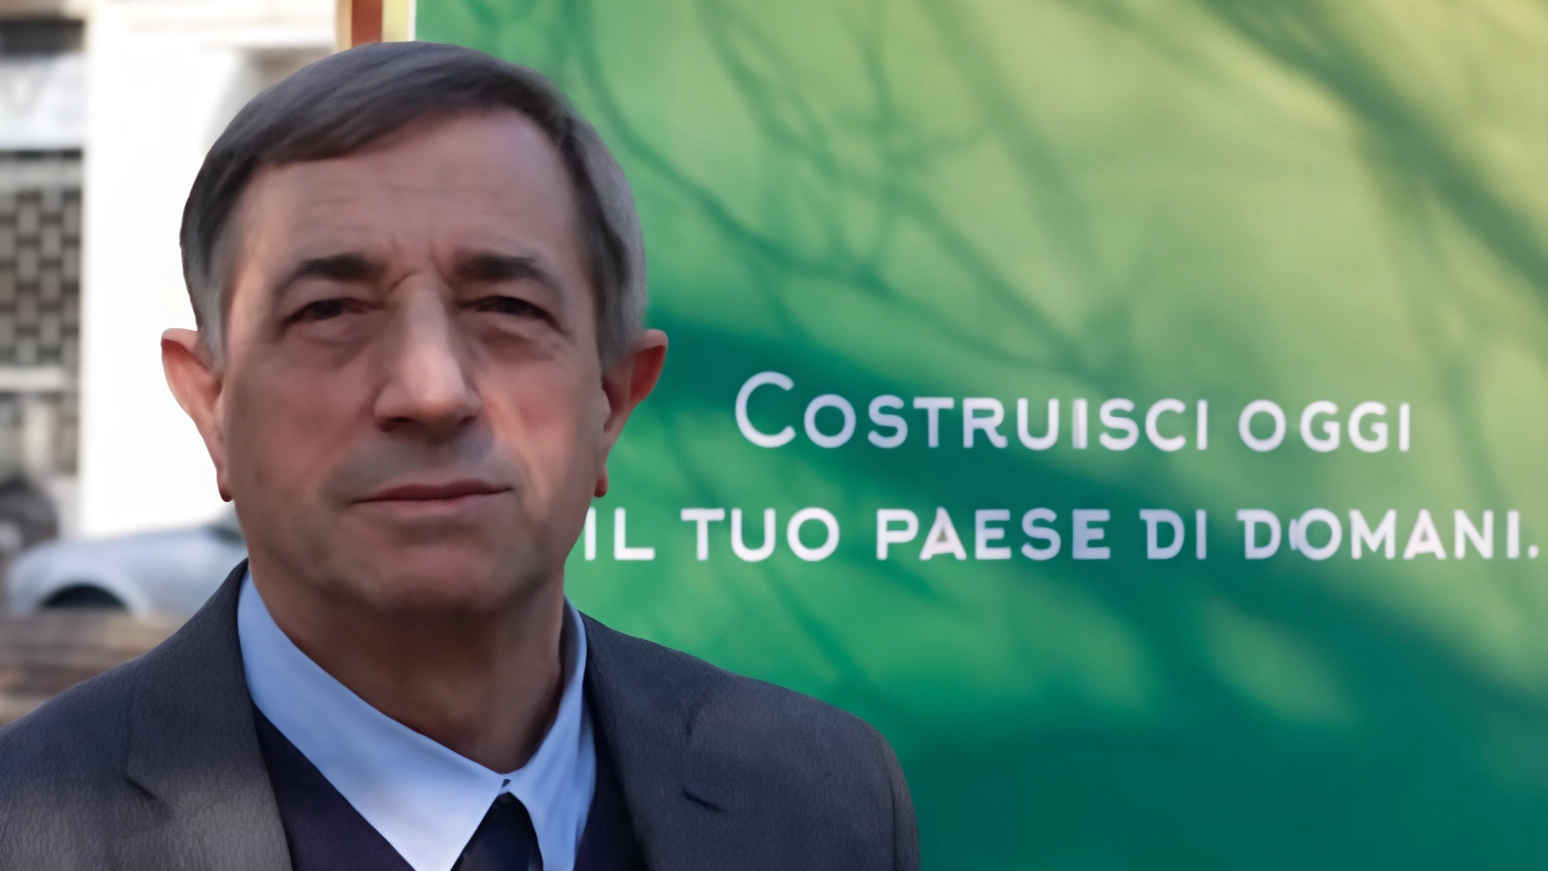 La lista civica Vignate Futura presenta il candidato Luigi Baggi, avvocato civilista, per le elezioni comunali. Promesse di cambiamento e attenzione a temi come ambiente, servizi e cultura.